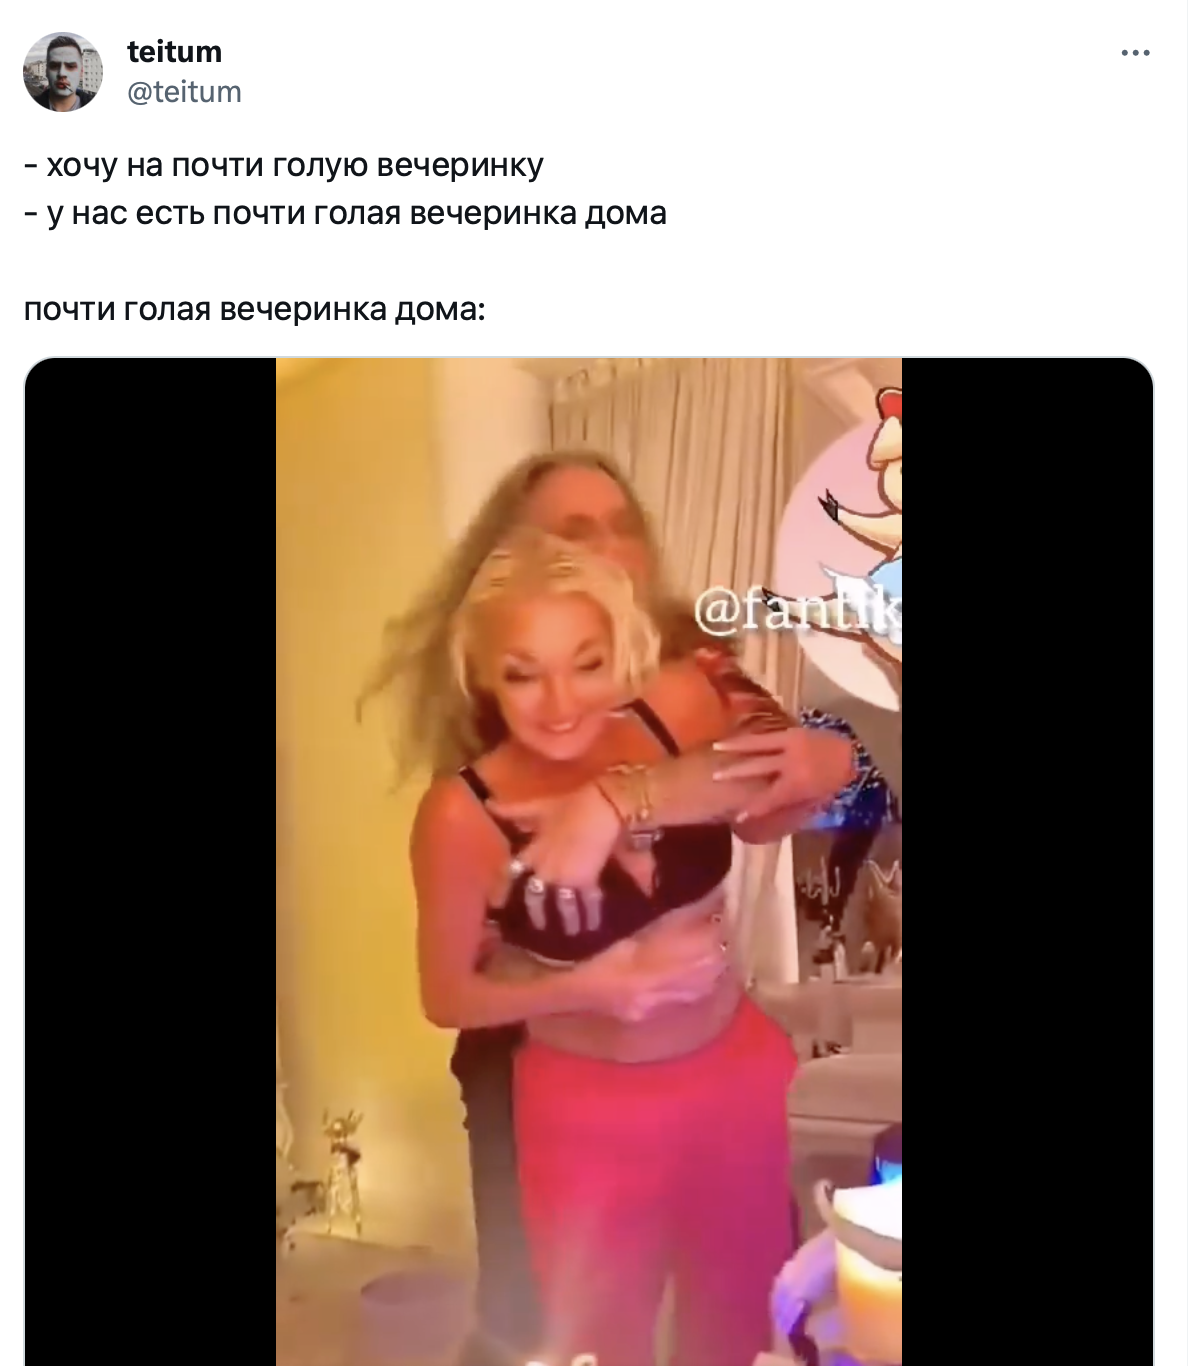 Критиковали "голую вечеринку", но опозорились еще больше: Z-патриоты Джигурда и Волочкова устроили пьяные танцы с раздеванием. Видео